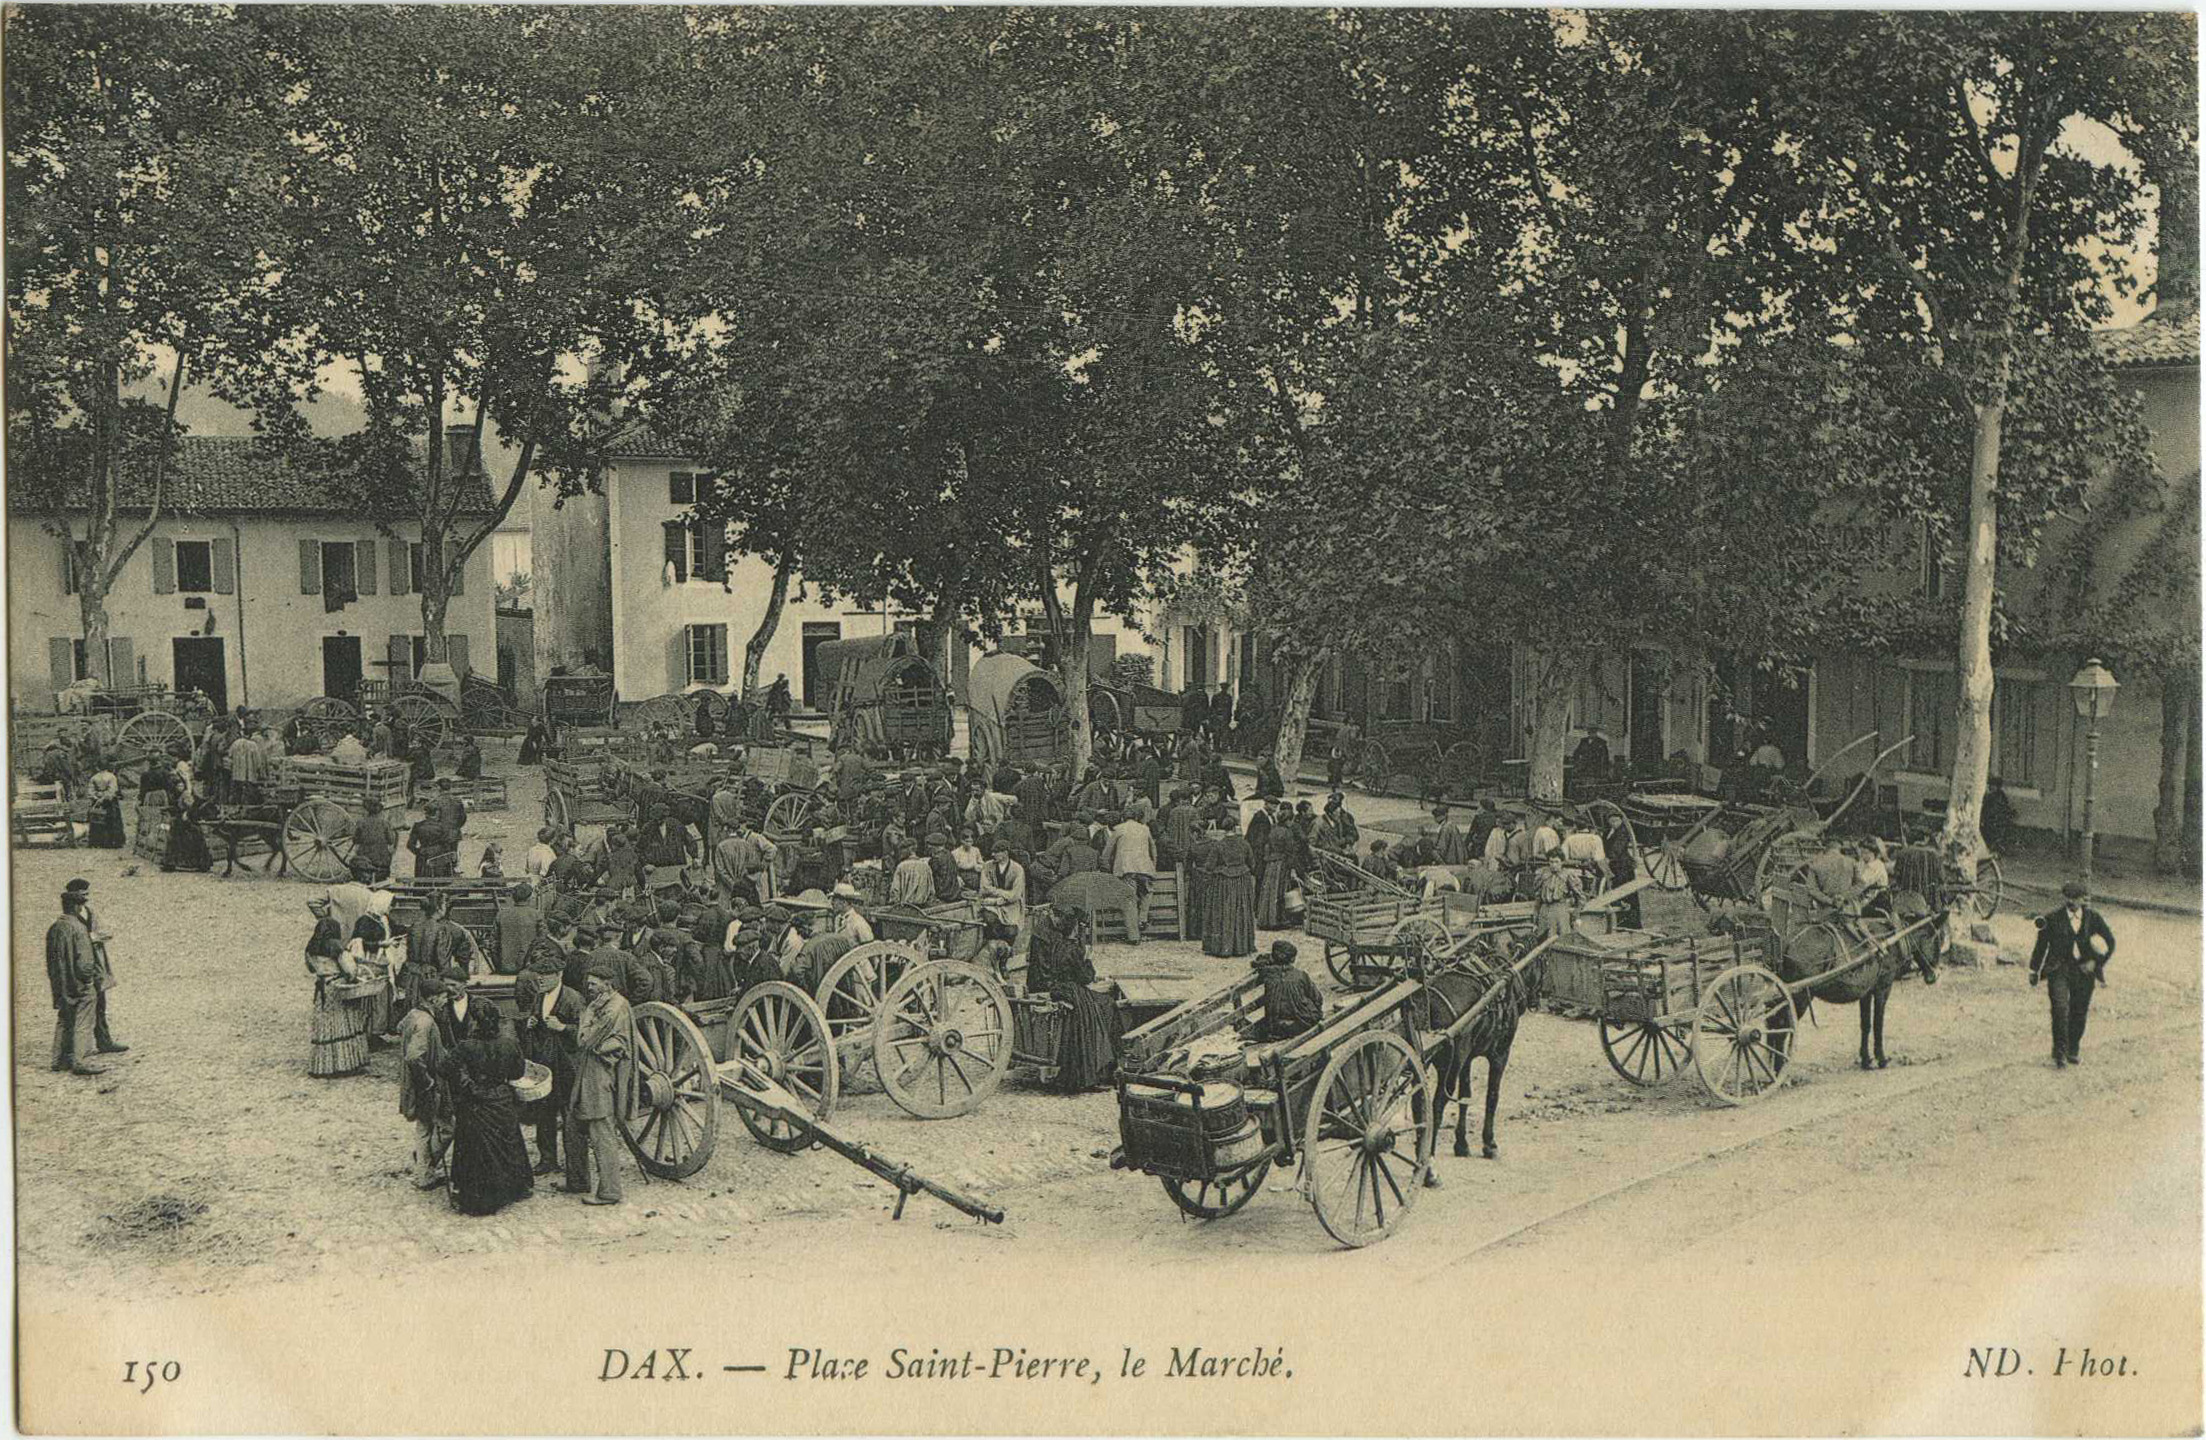 Dax - Place Saint-Pierre, le Marché.